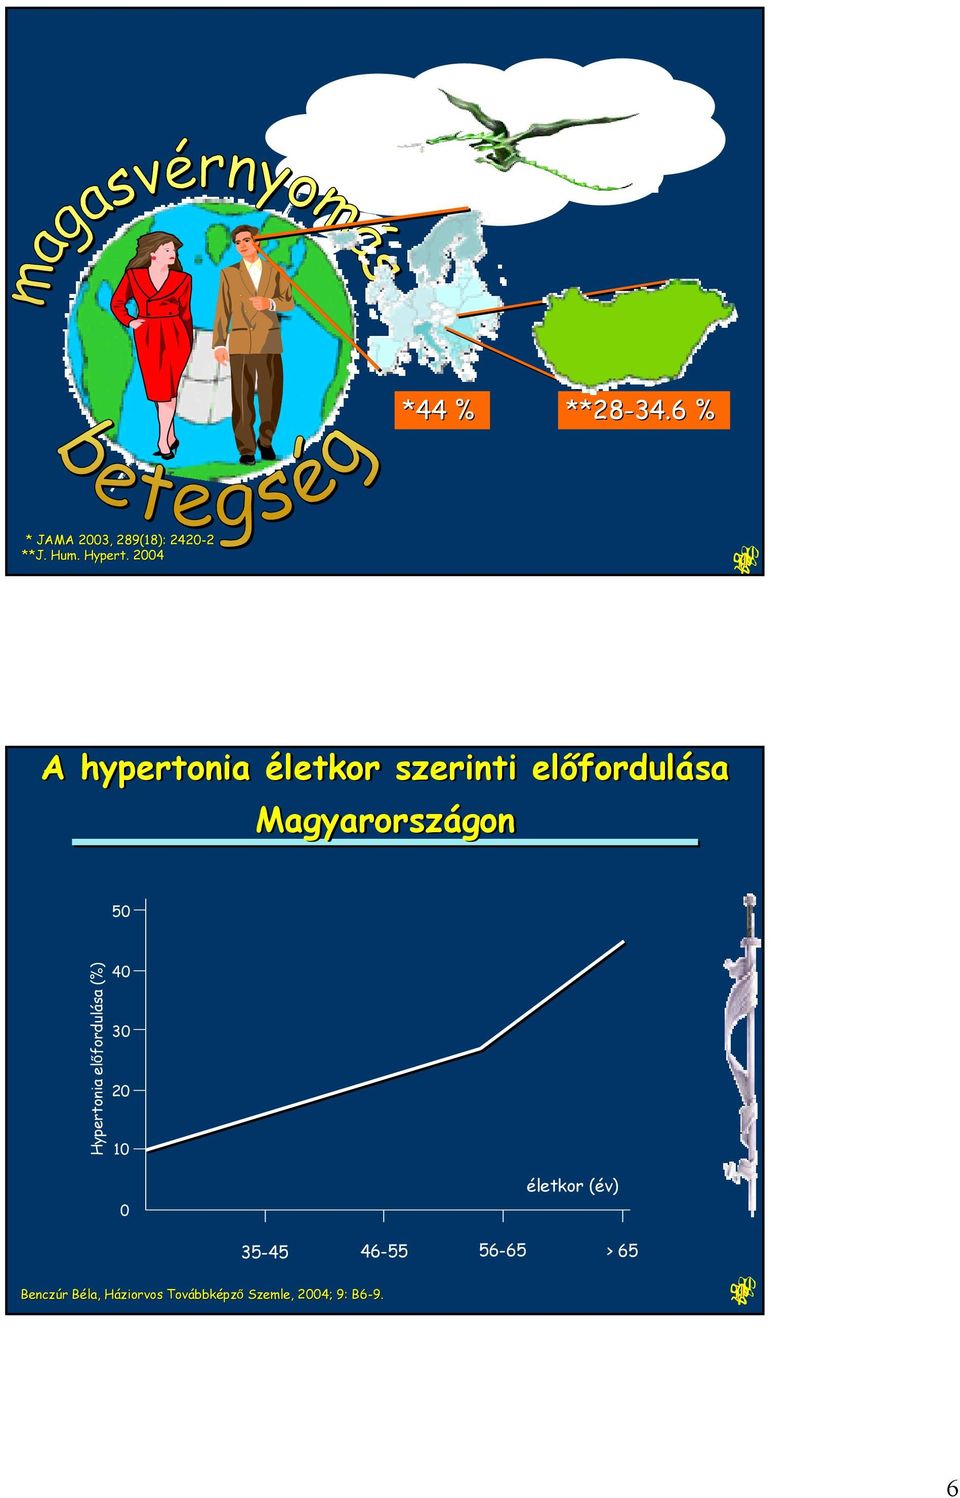 Hypertonia előfordulása (%) 4 3 2 1 életkor (év) 35-45 46-55 56-65